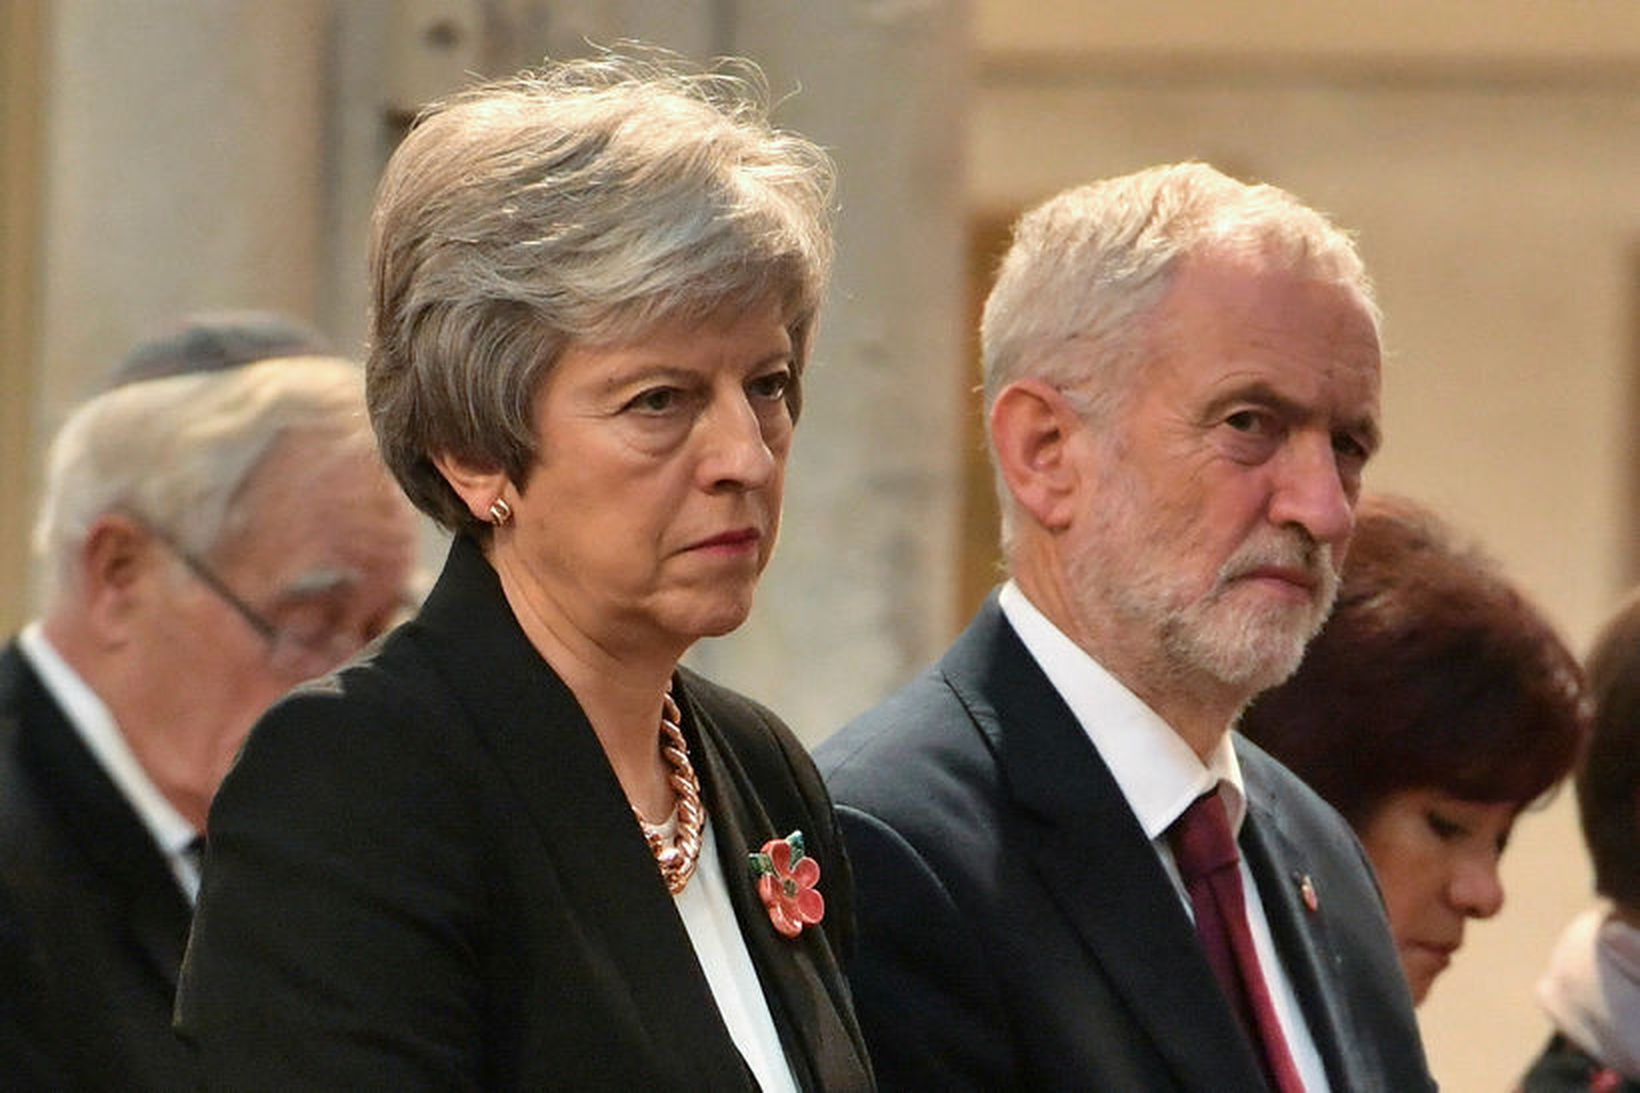 Theresa May, forsætisráðherra Bretlands, og Jeremy Corbyn, leiðtogi Verkamannaflokksins.